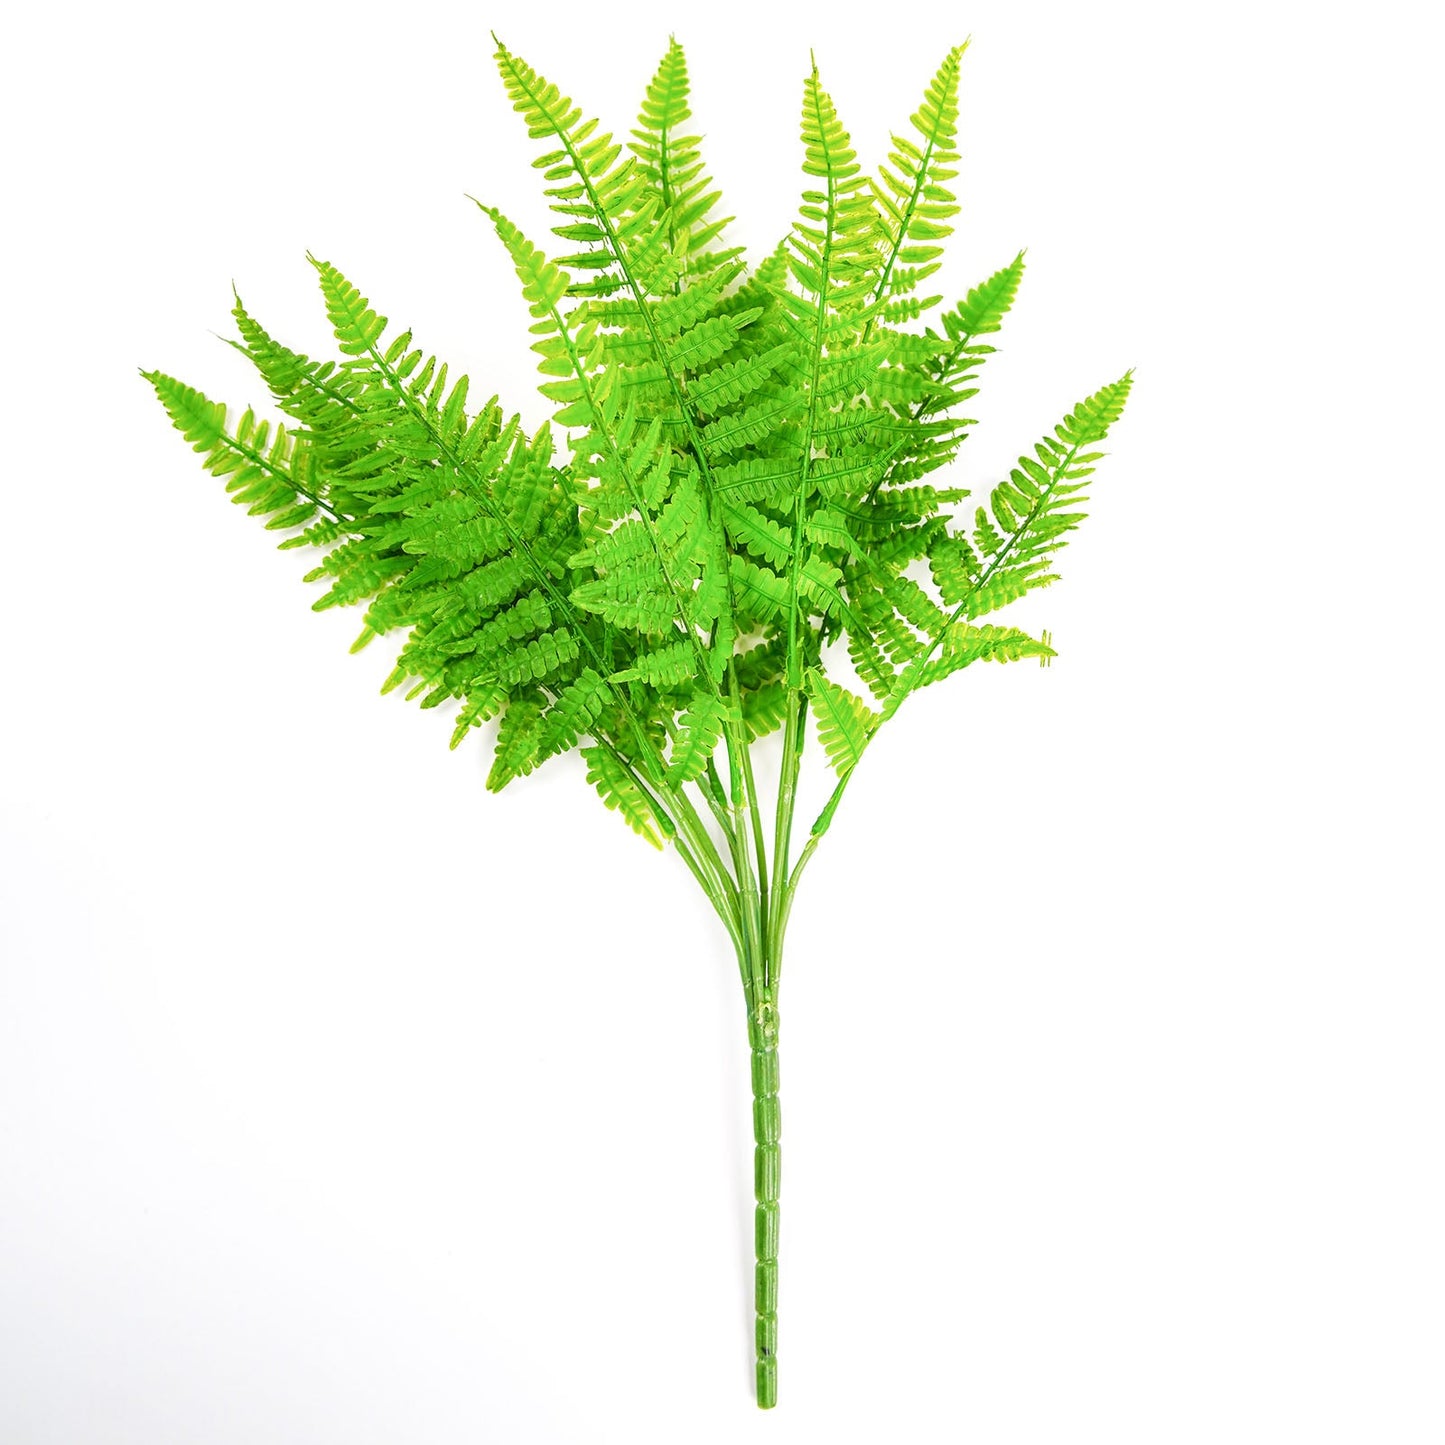 2 Stems Green Artificial Boston Fern Leaf Plant Indoor Faux Spray 19"